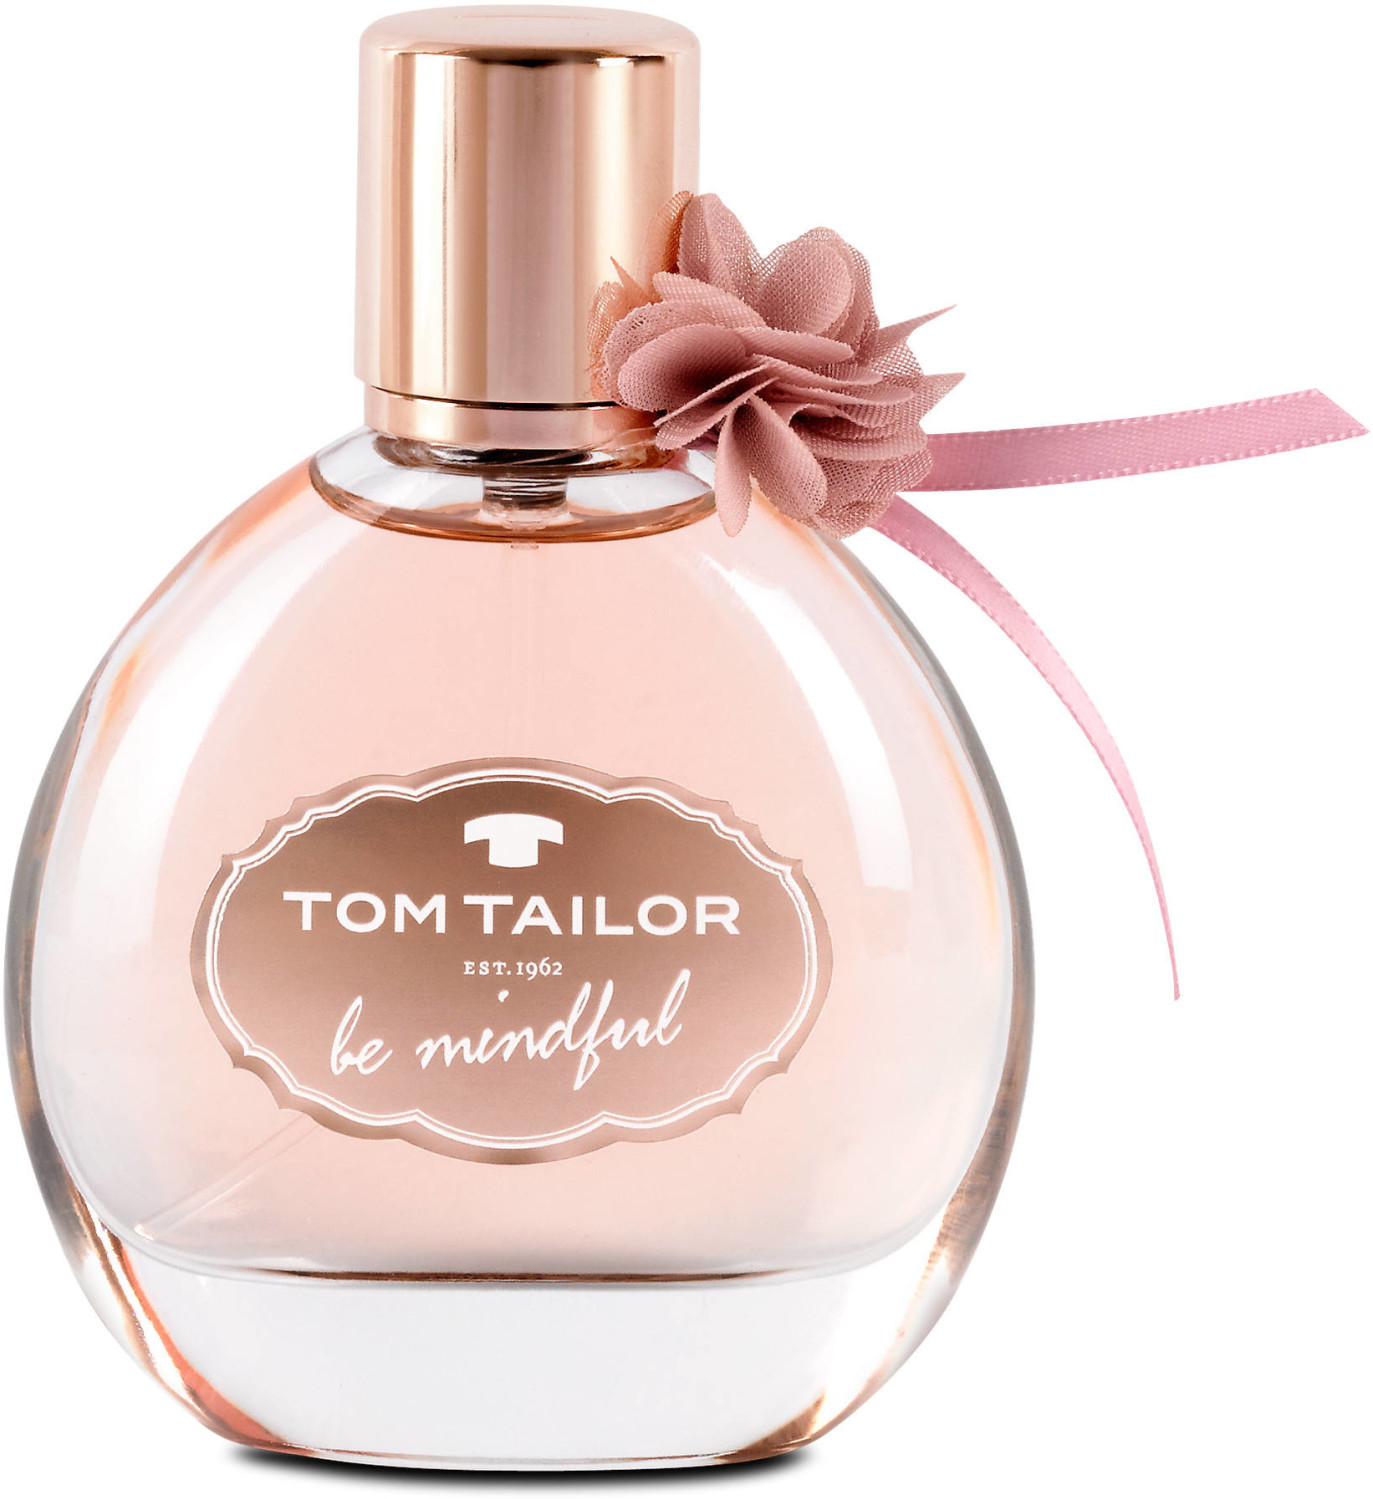 Photos - Women's Fragrance Tom Tailor Be Mindful Woman Eau de Toilette  (50ml)